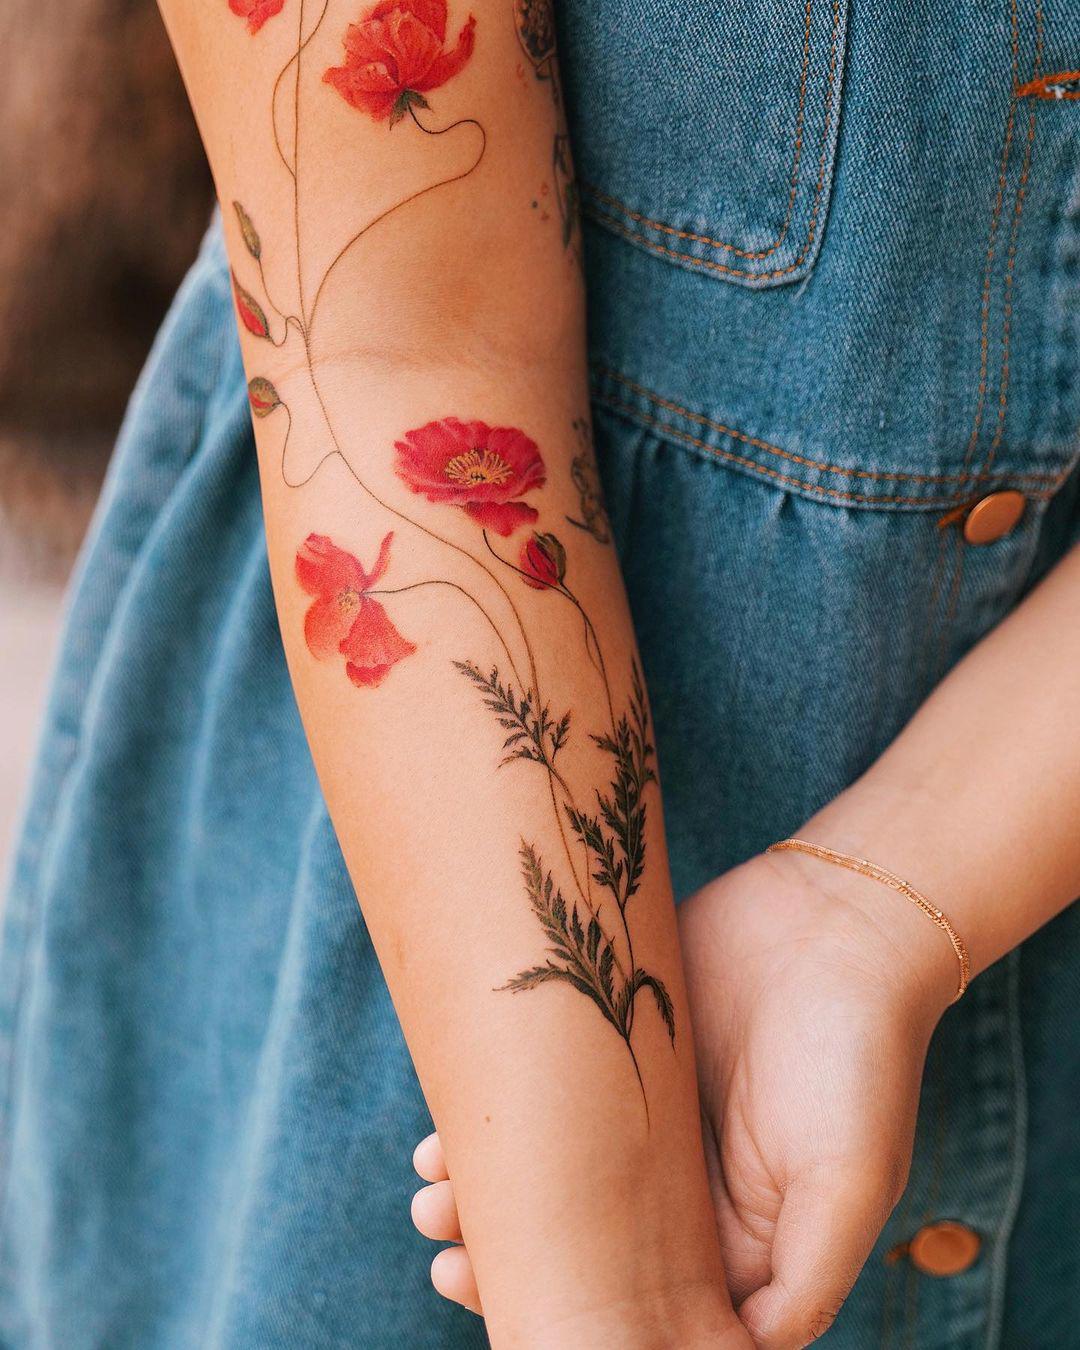 30 tatuajes de flores bonitos y originales: cerezo, de lis, de loto